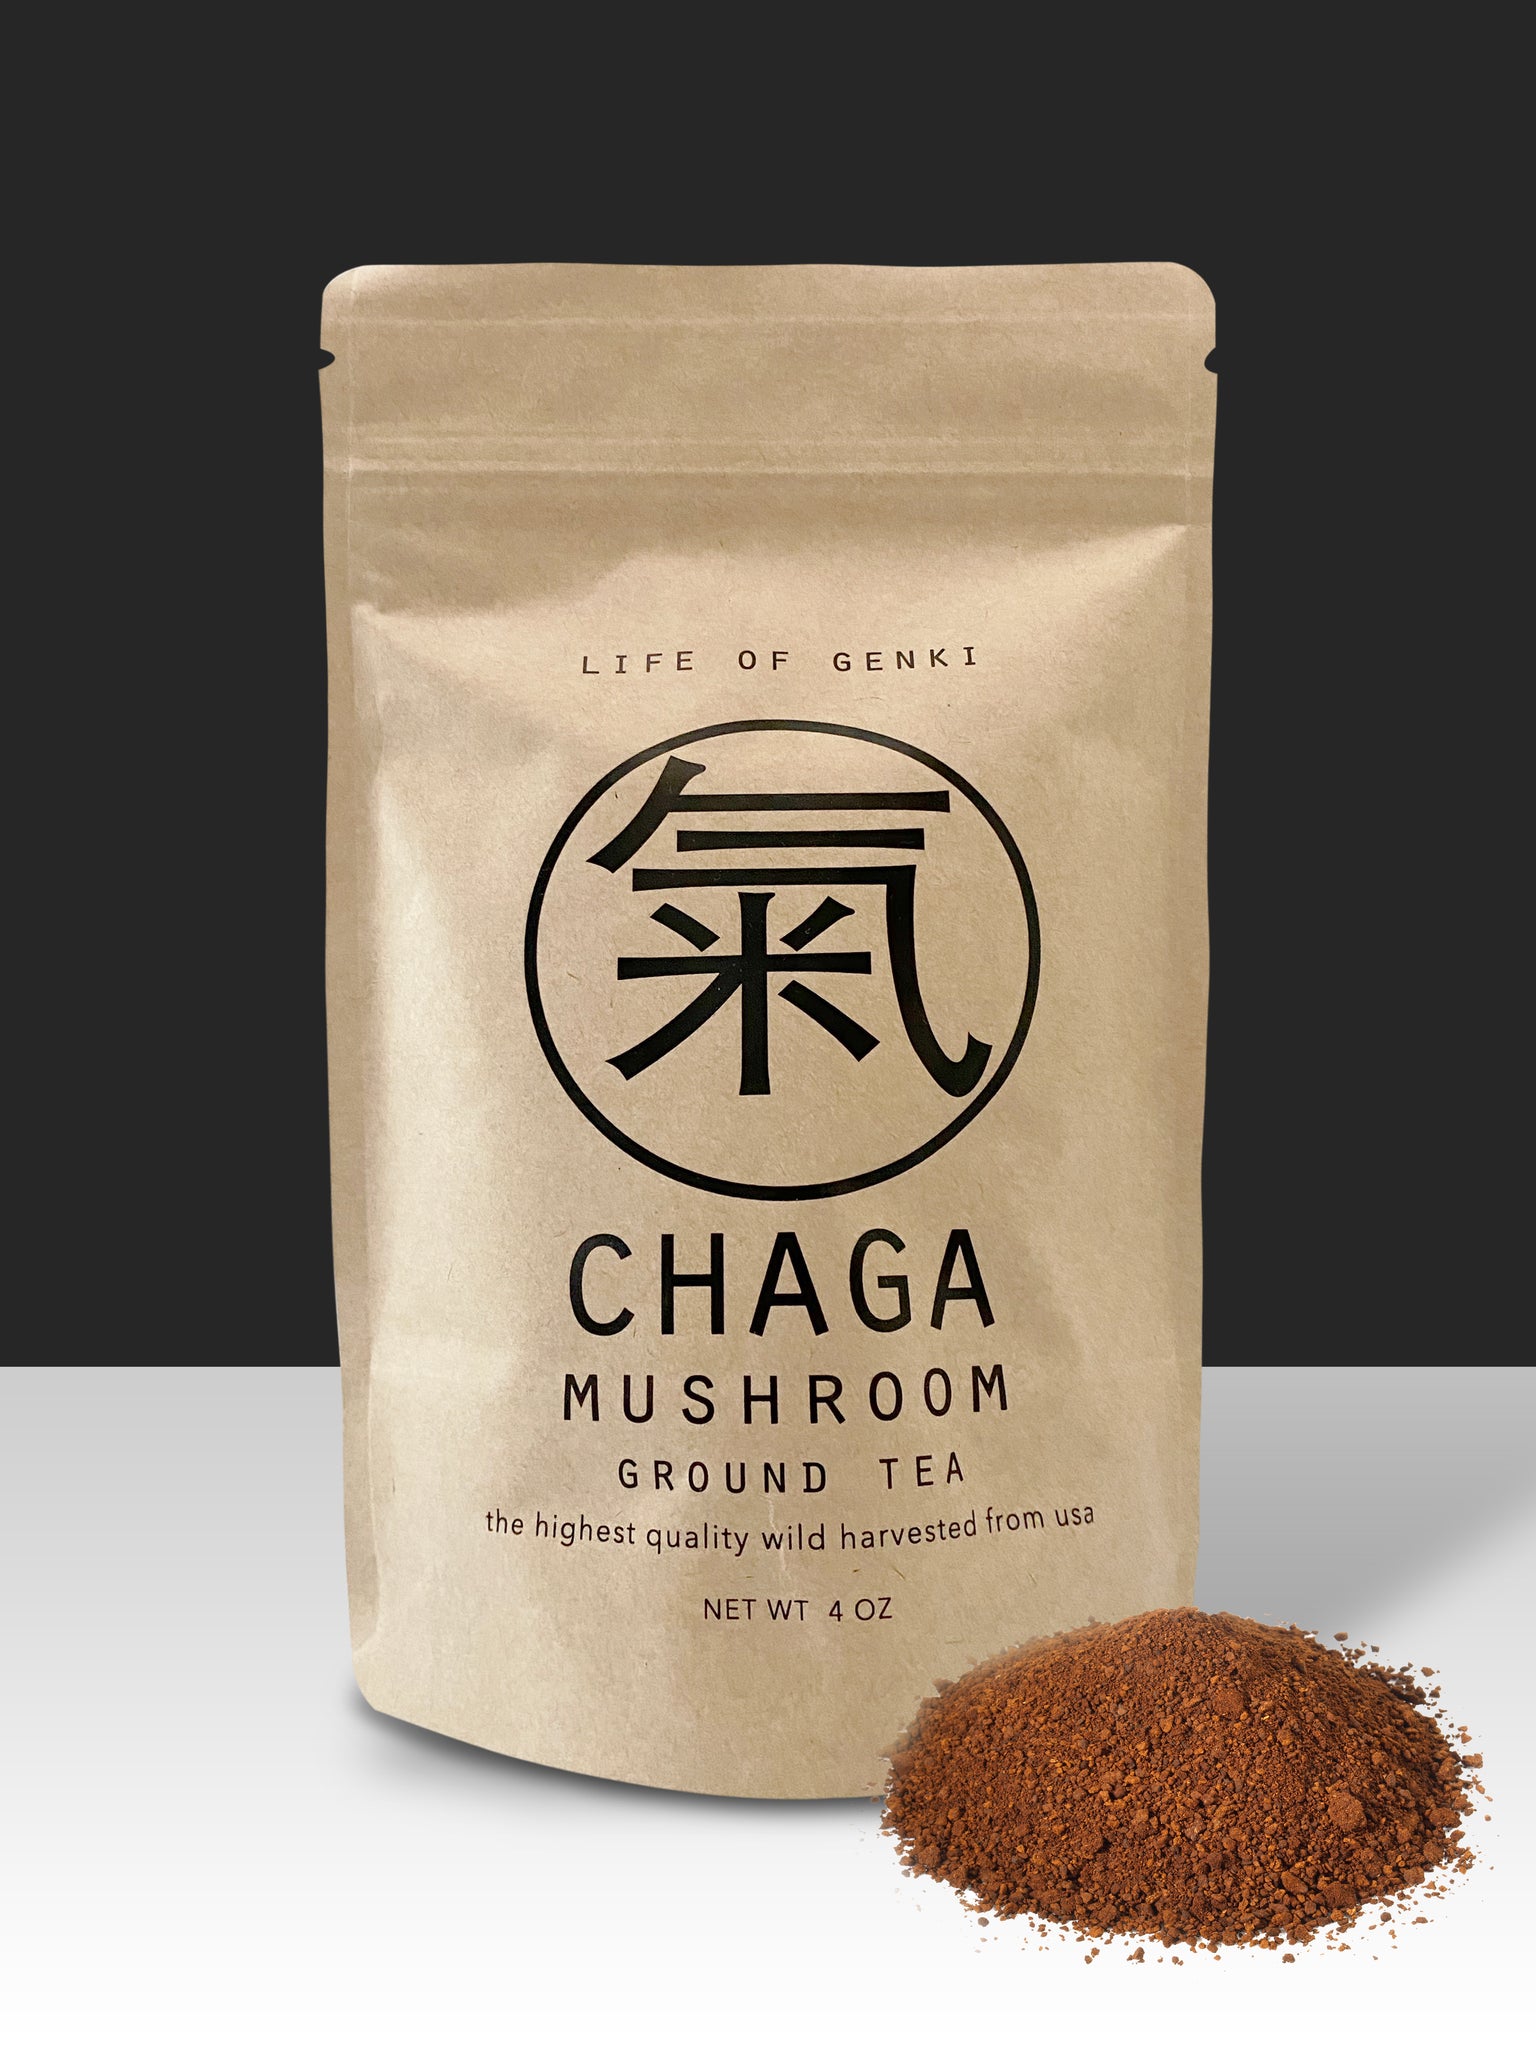 4 oz Chaga Mushroom ground tea